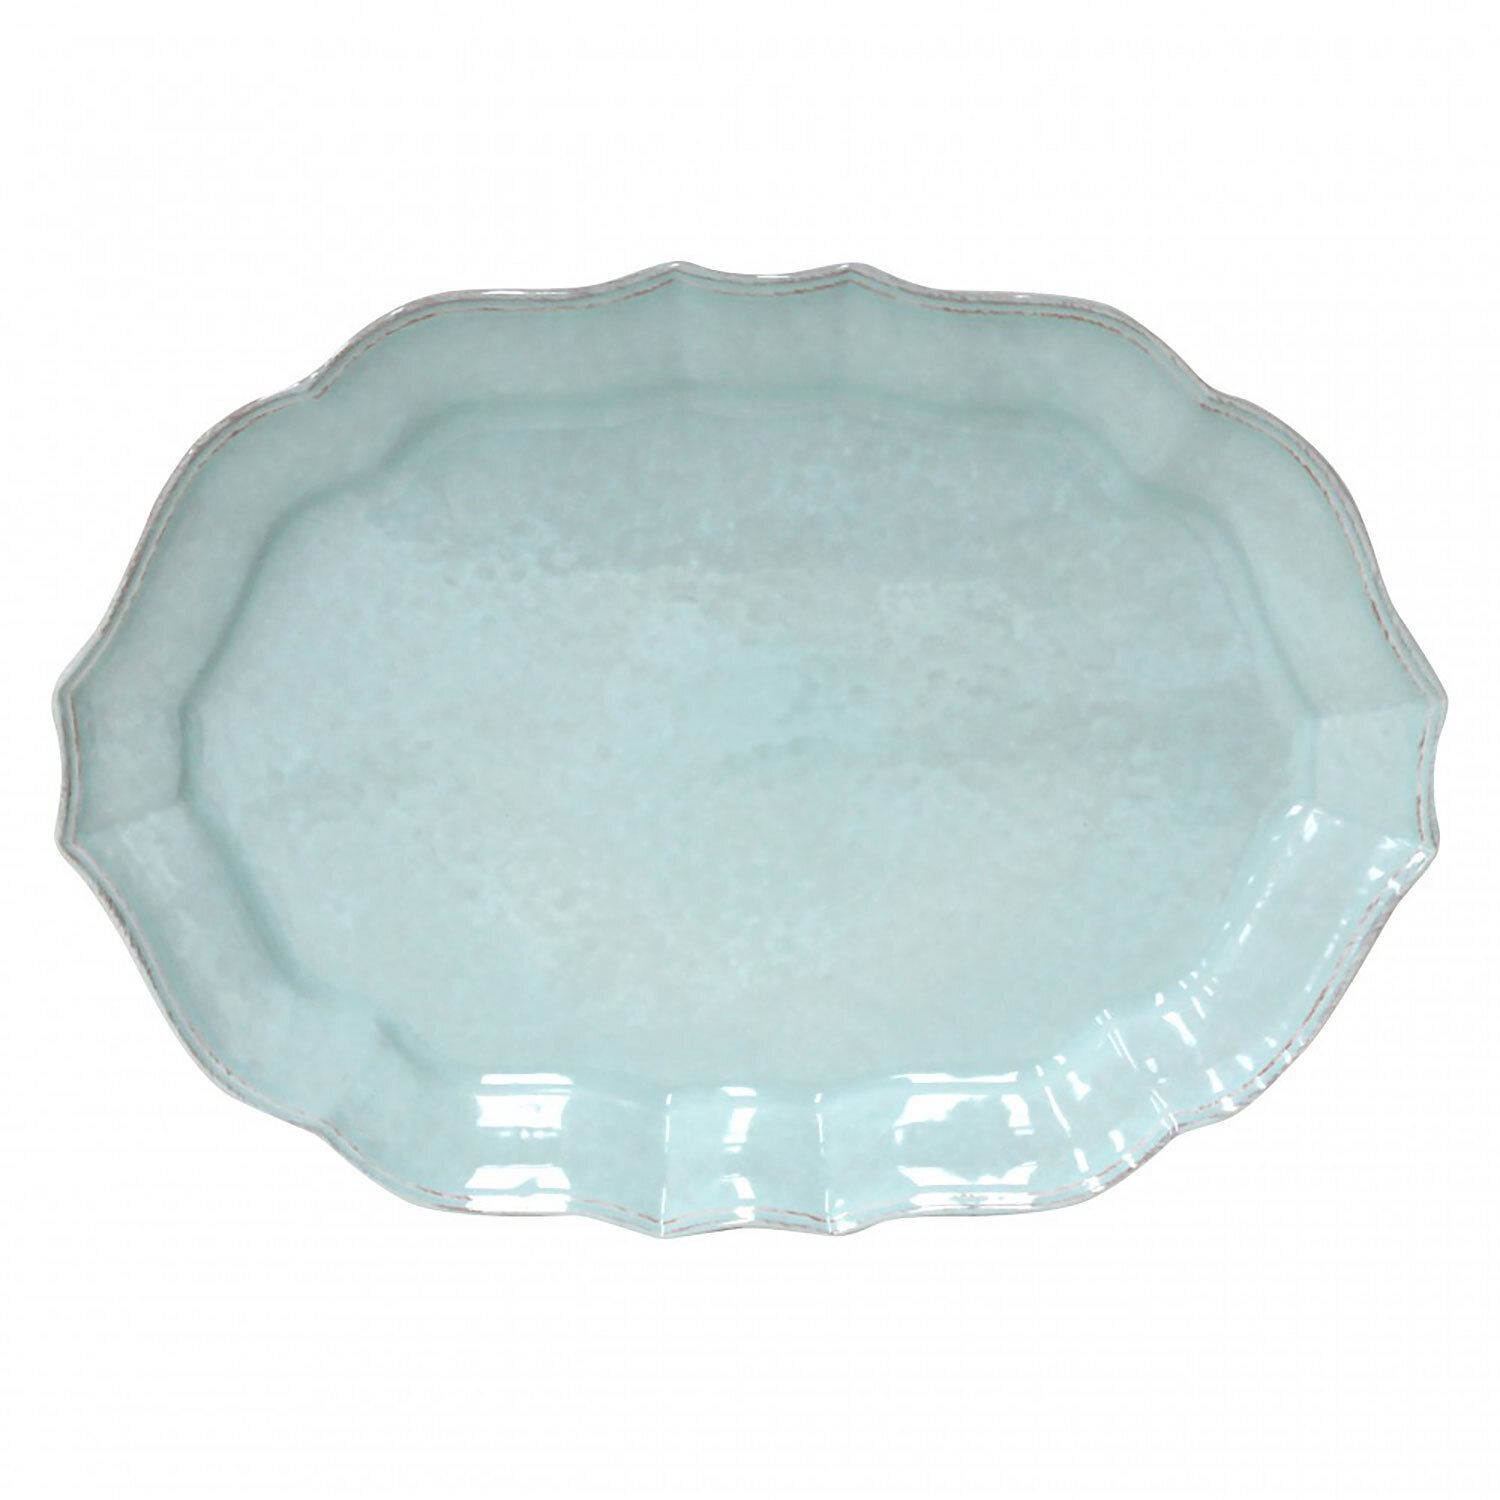 Casafina Impressions Robins Egg Blue Large Oval Platter IM535-BLU